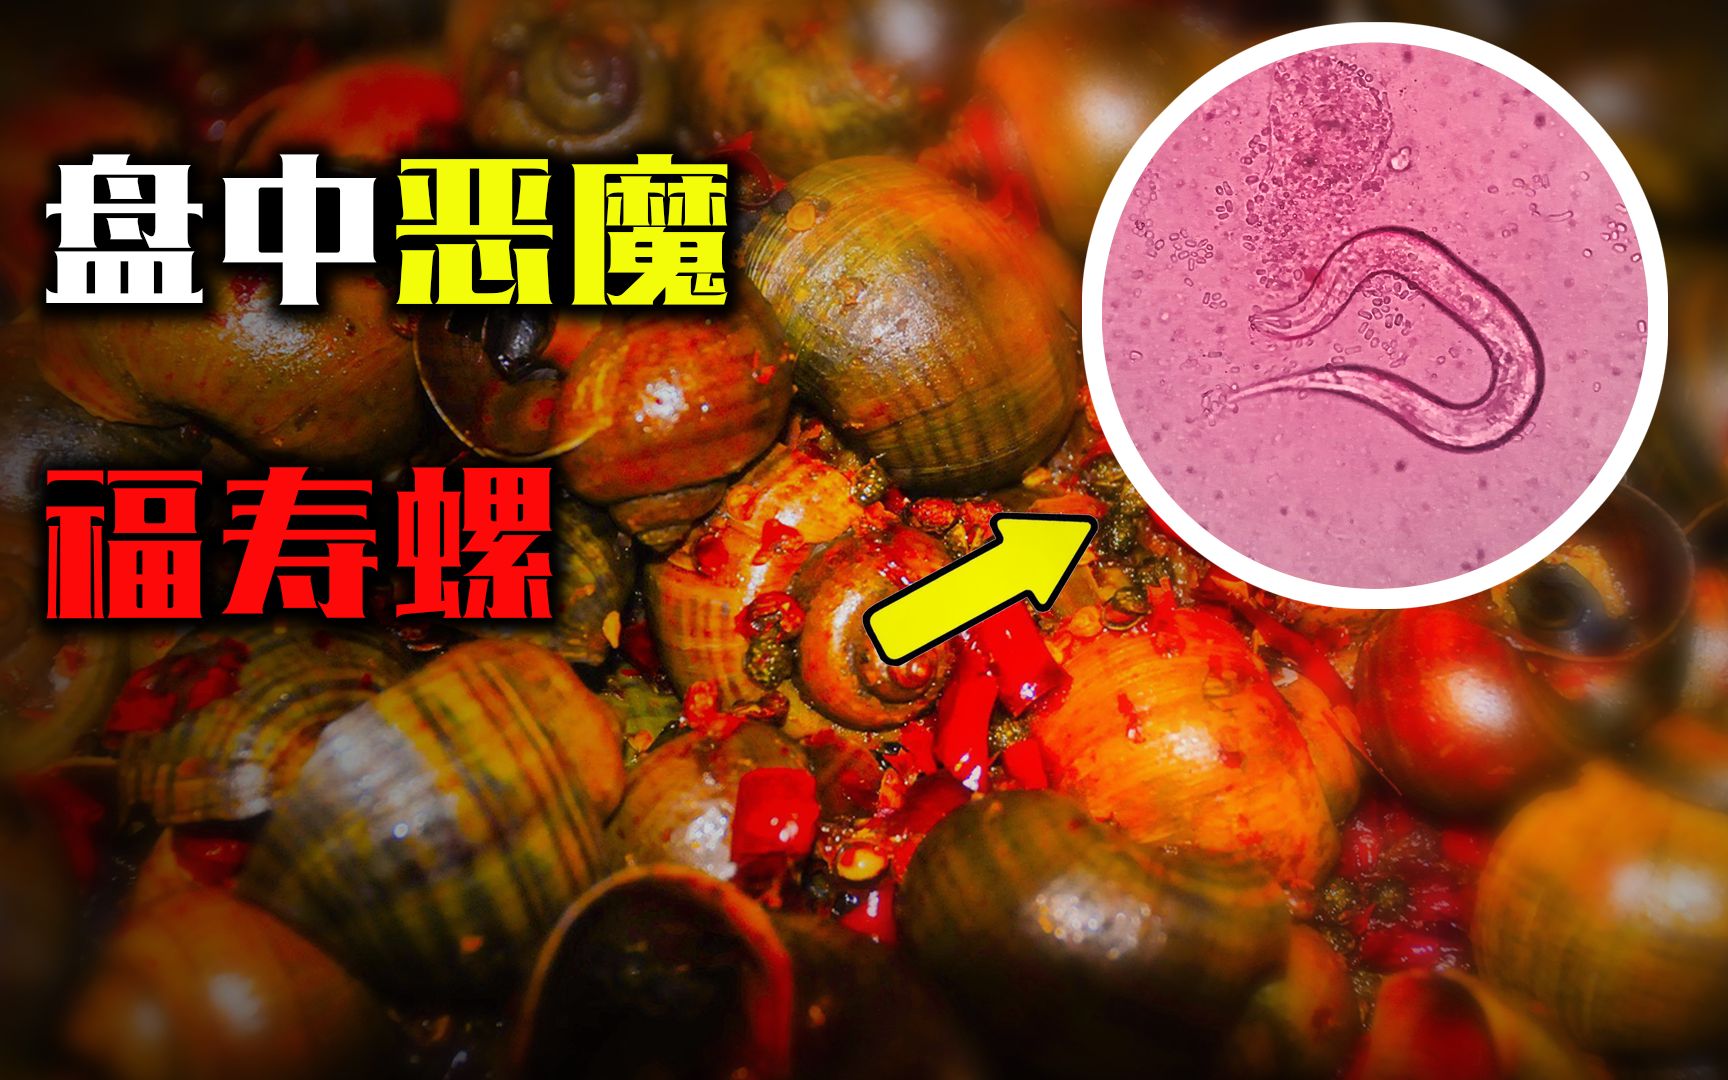 福寿螺有多可怕?体内含有6000条寄生虫,在日本却成了抢手货